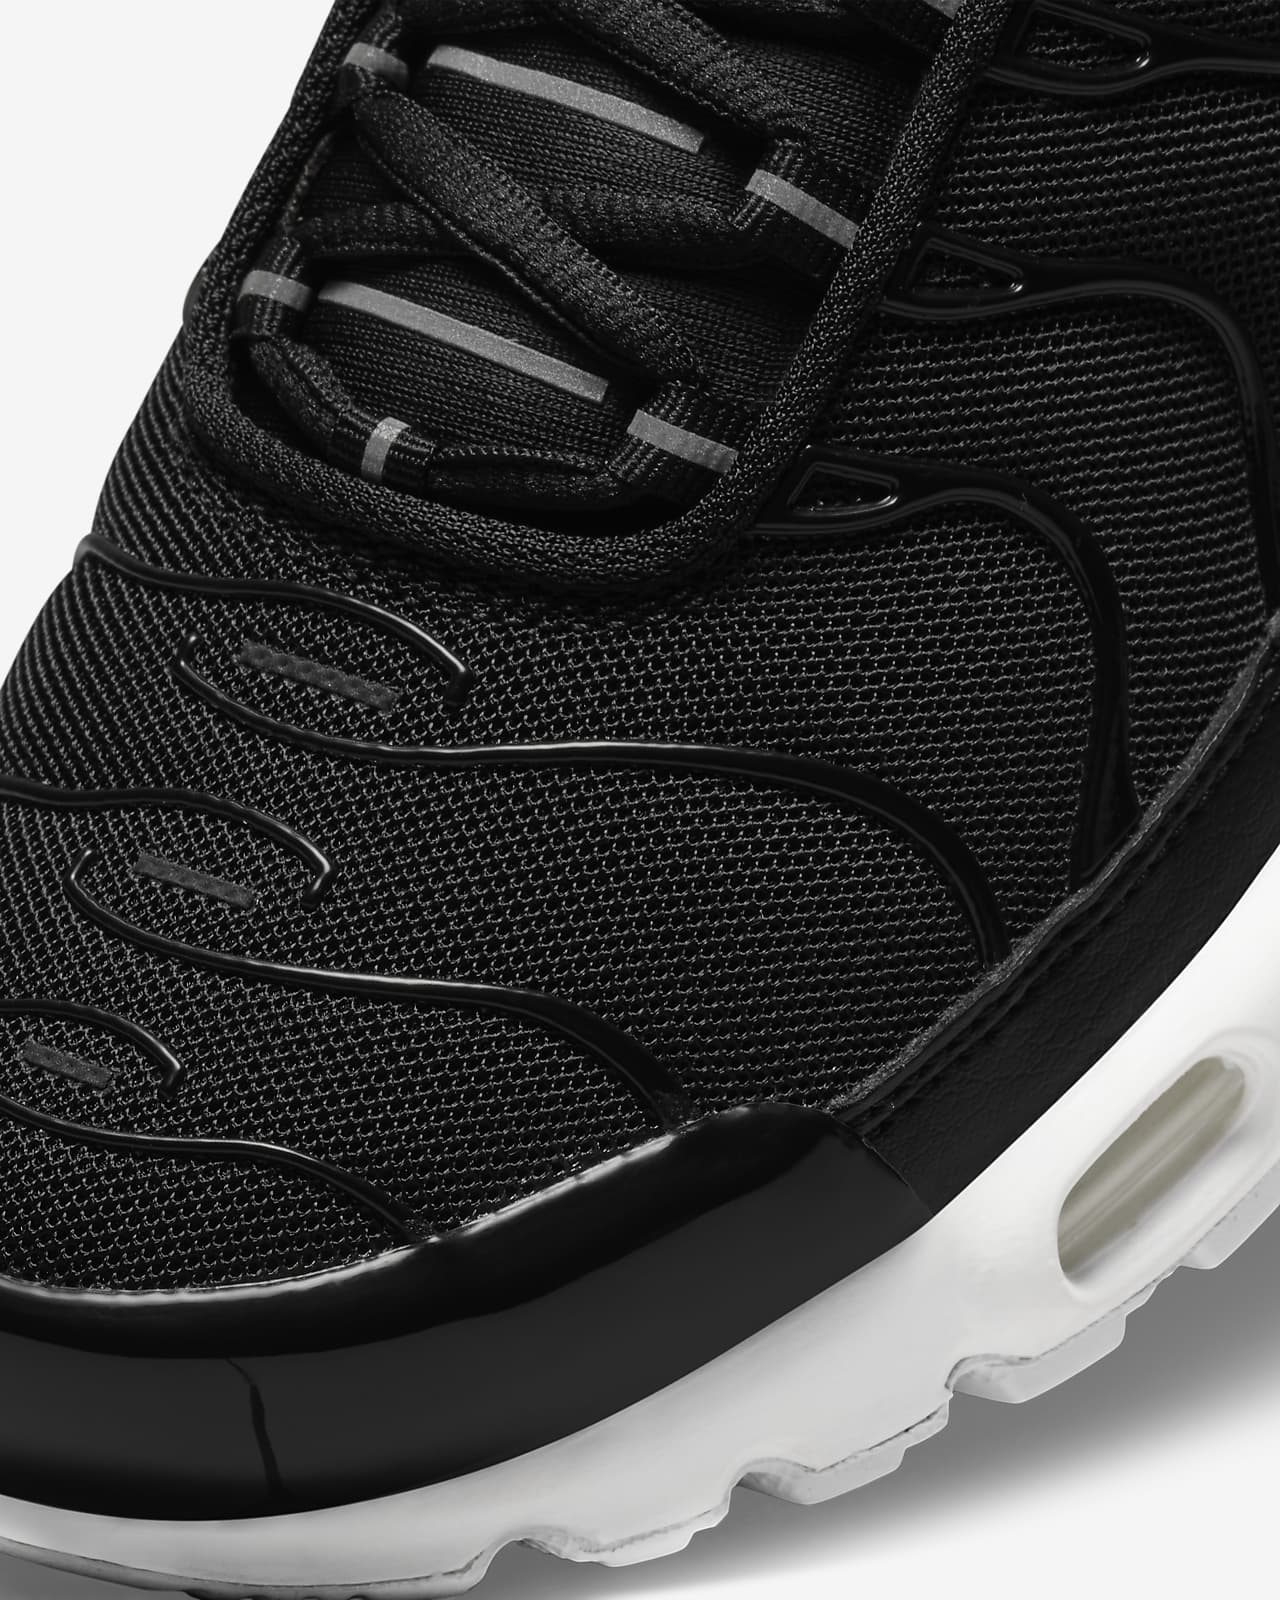 Chaussure Nike Air Max Plus pour Femme